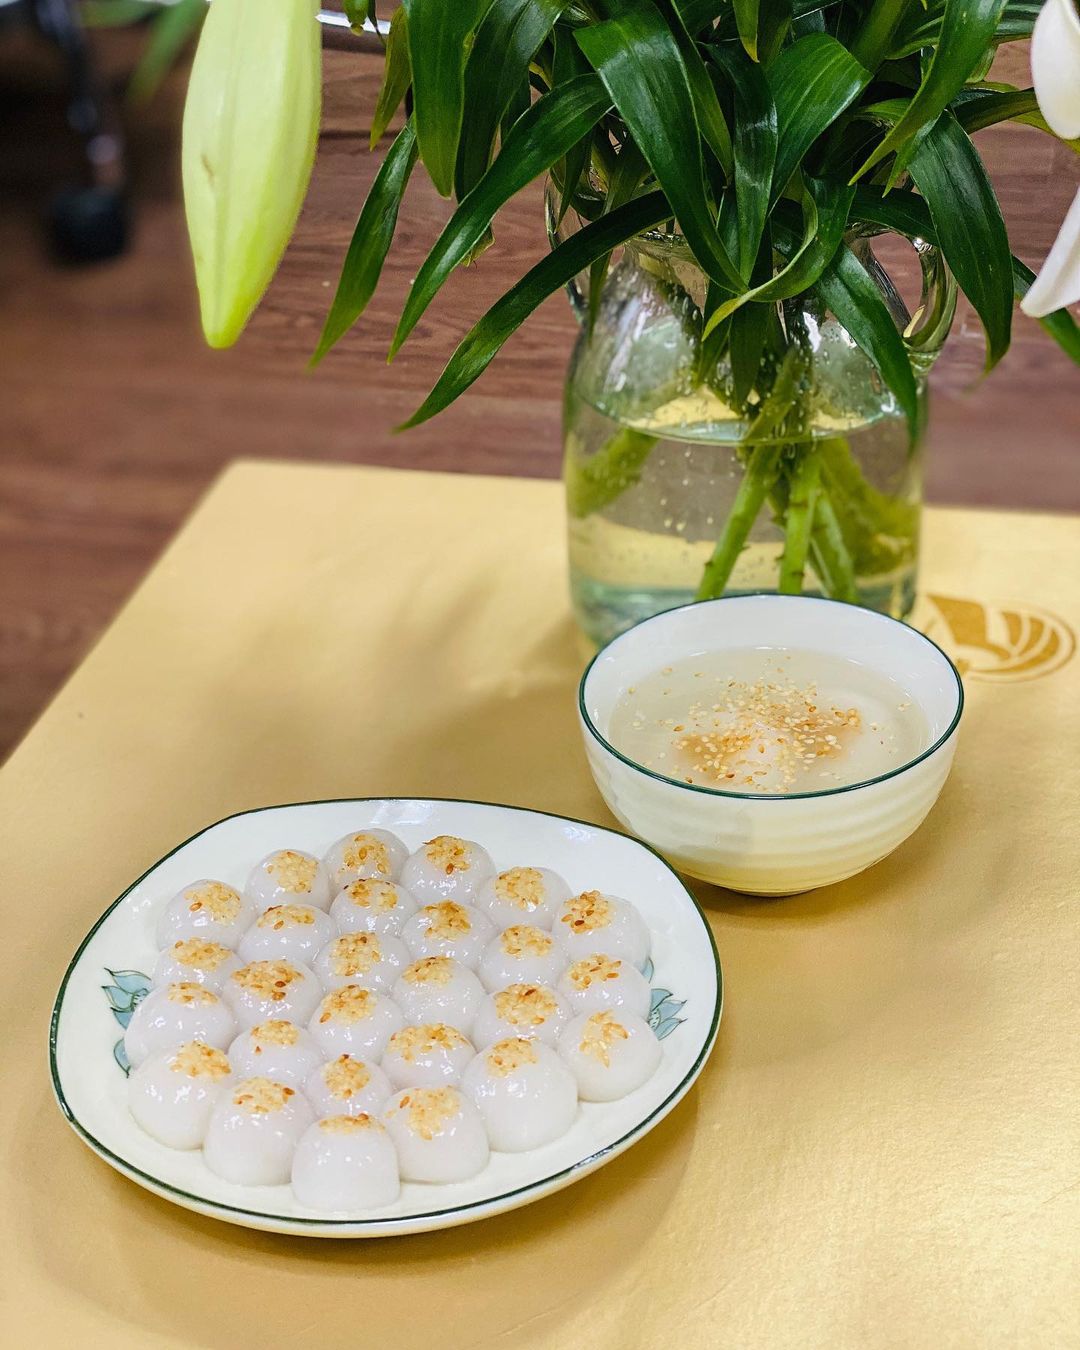 Bánh trôi, bánh chay là những món bánh gắn liền với Tết Hàn thực của người Việt. Ảnh: hachixxi